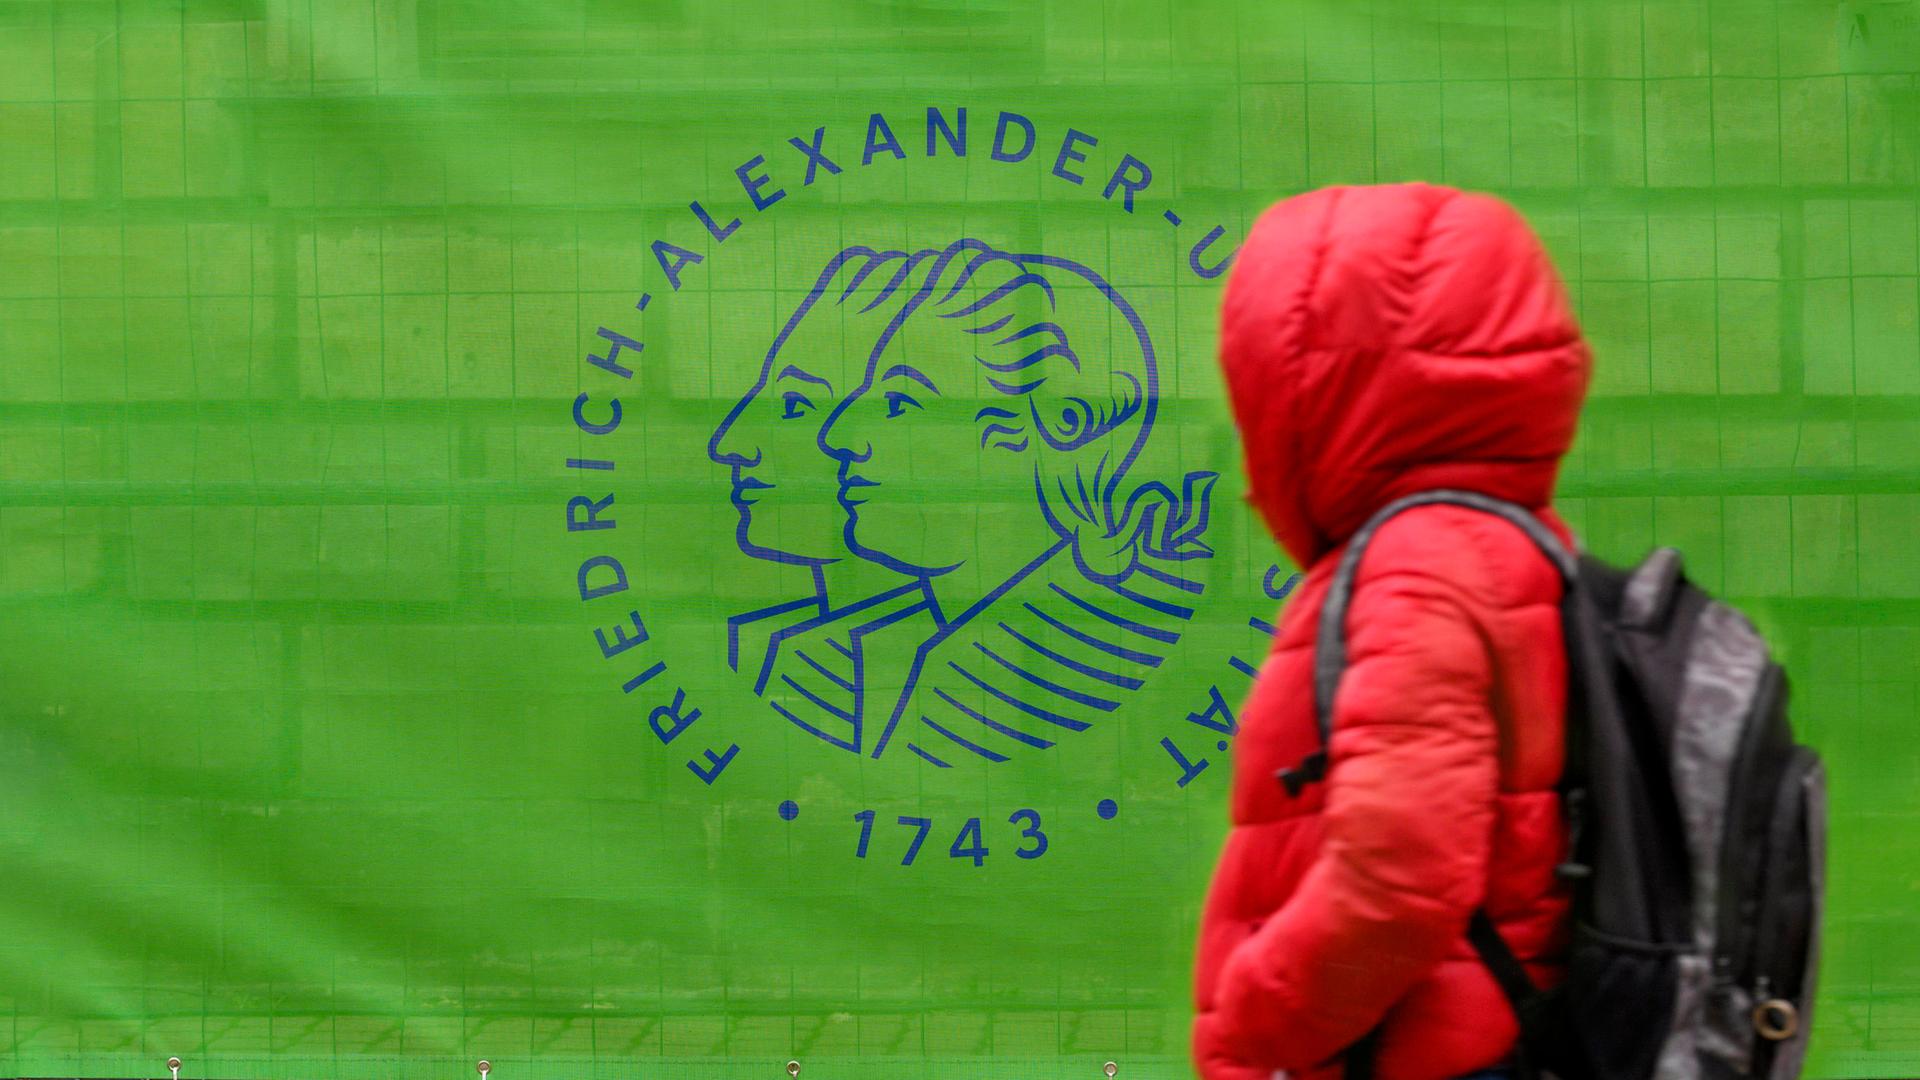 Eine Person im roten Anorak geht an einem Bauzaun vorbei, der mit einem grünen Transparent mit der Aufschrift "Friedrich Alexander Universität 1743" verkleidet ist.